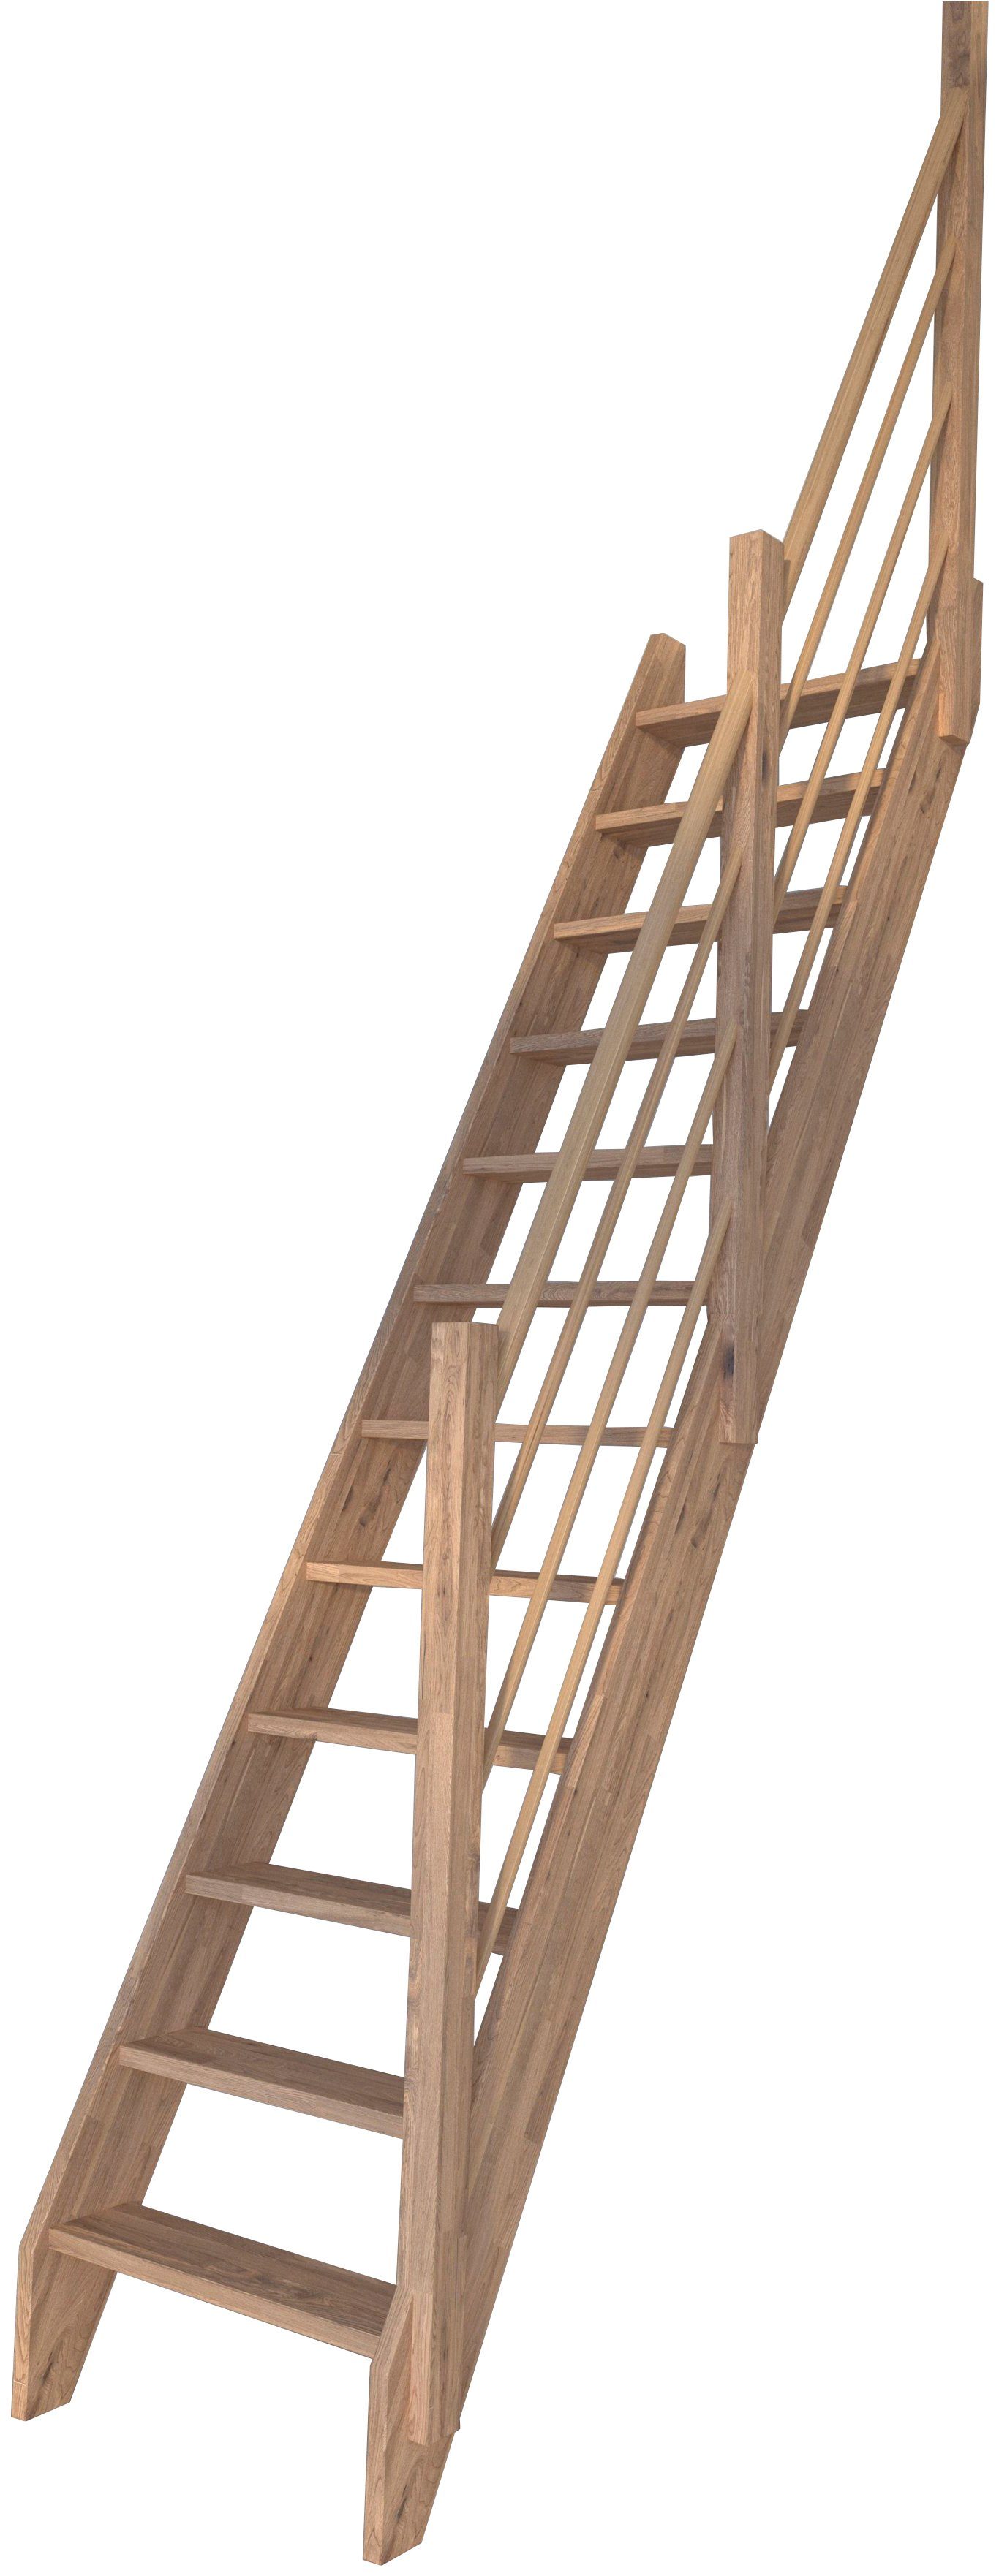 Holz-Holz Design Raumspartreppe Starwood 3000, Durchgehende Stufen Rechts, offen, Geländer Wangenteile Eiche